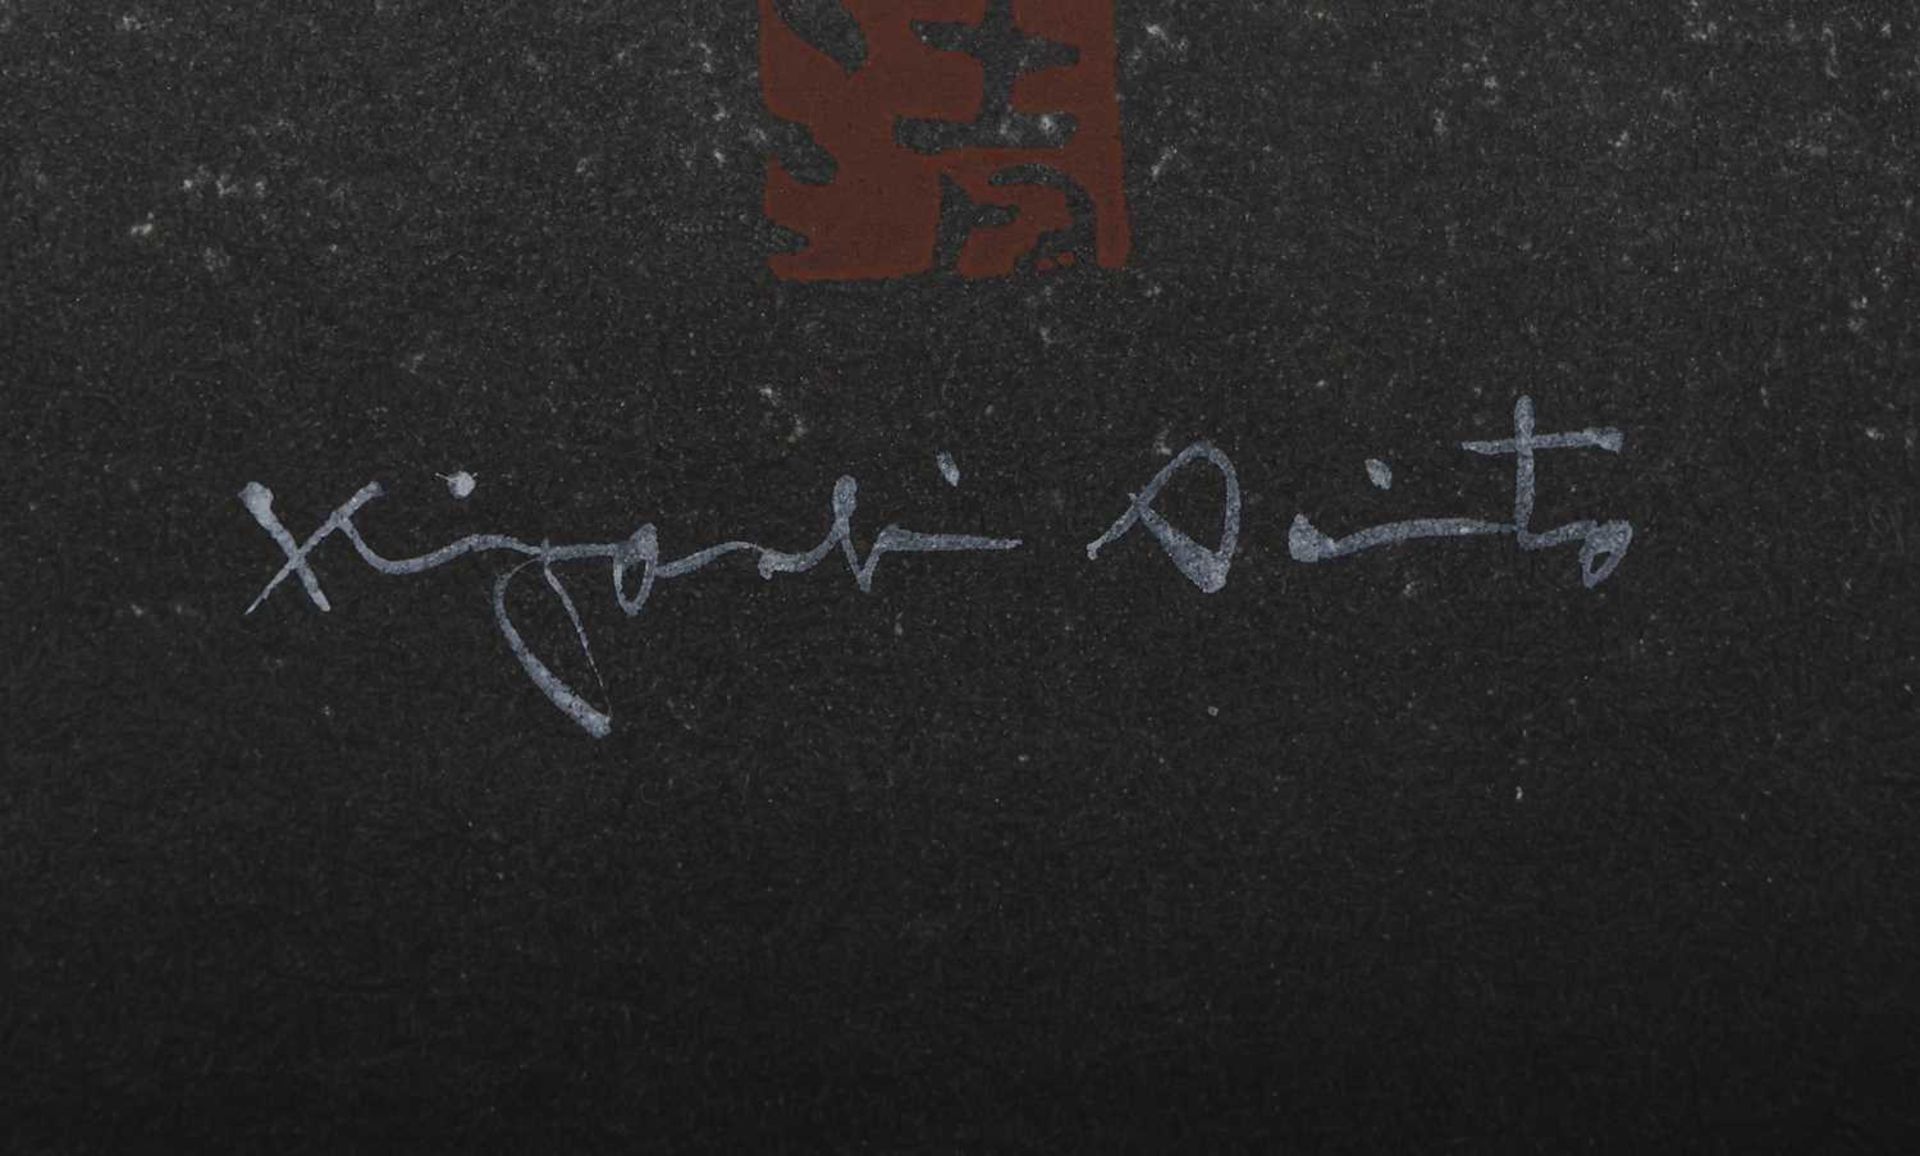 SAITO KIYOSHI (1907-1997) Blockdruck "Katsura Kyoto" - Image 2 of 3